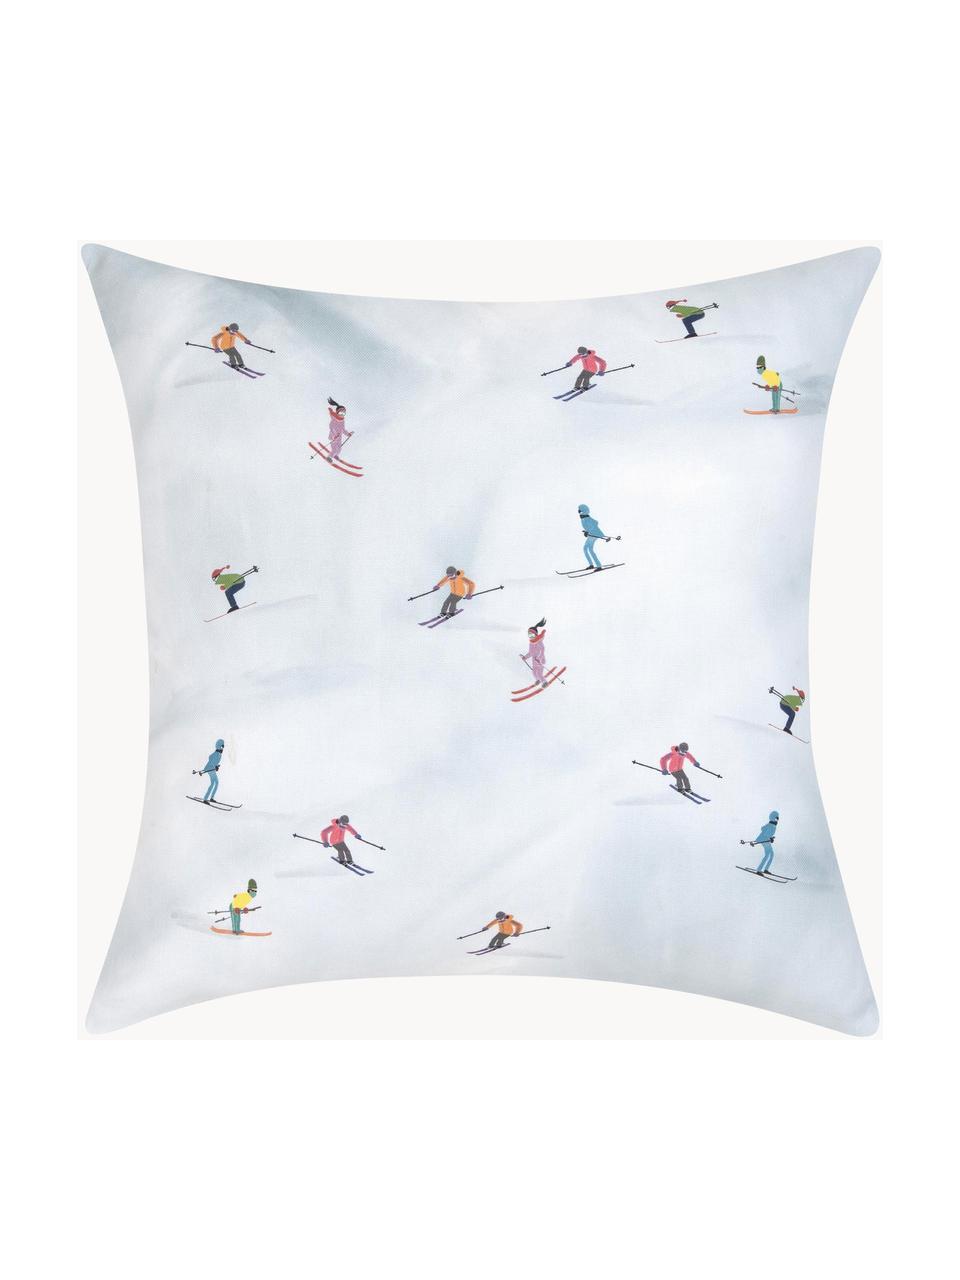 Poszewka na poduszkę Ski od Kery Till, 100% bawełna, Jasny niebieski, S 40 x D 40 cm